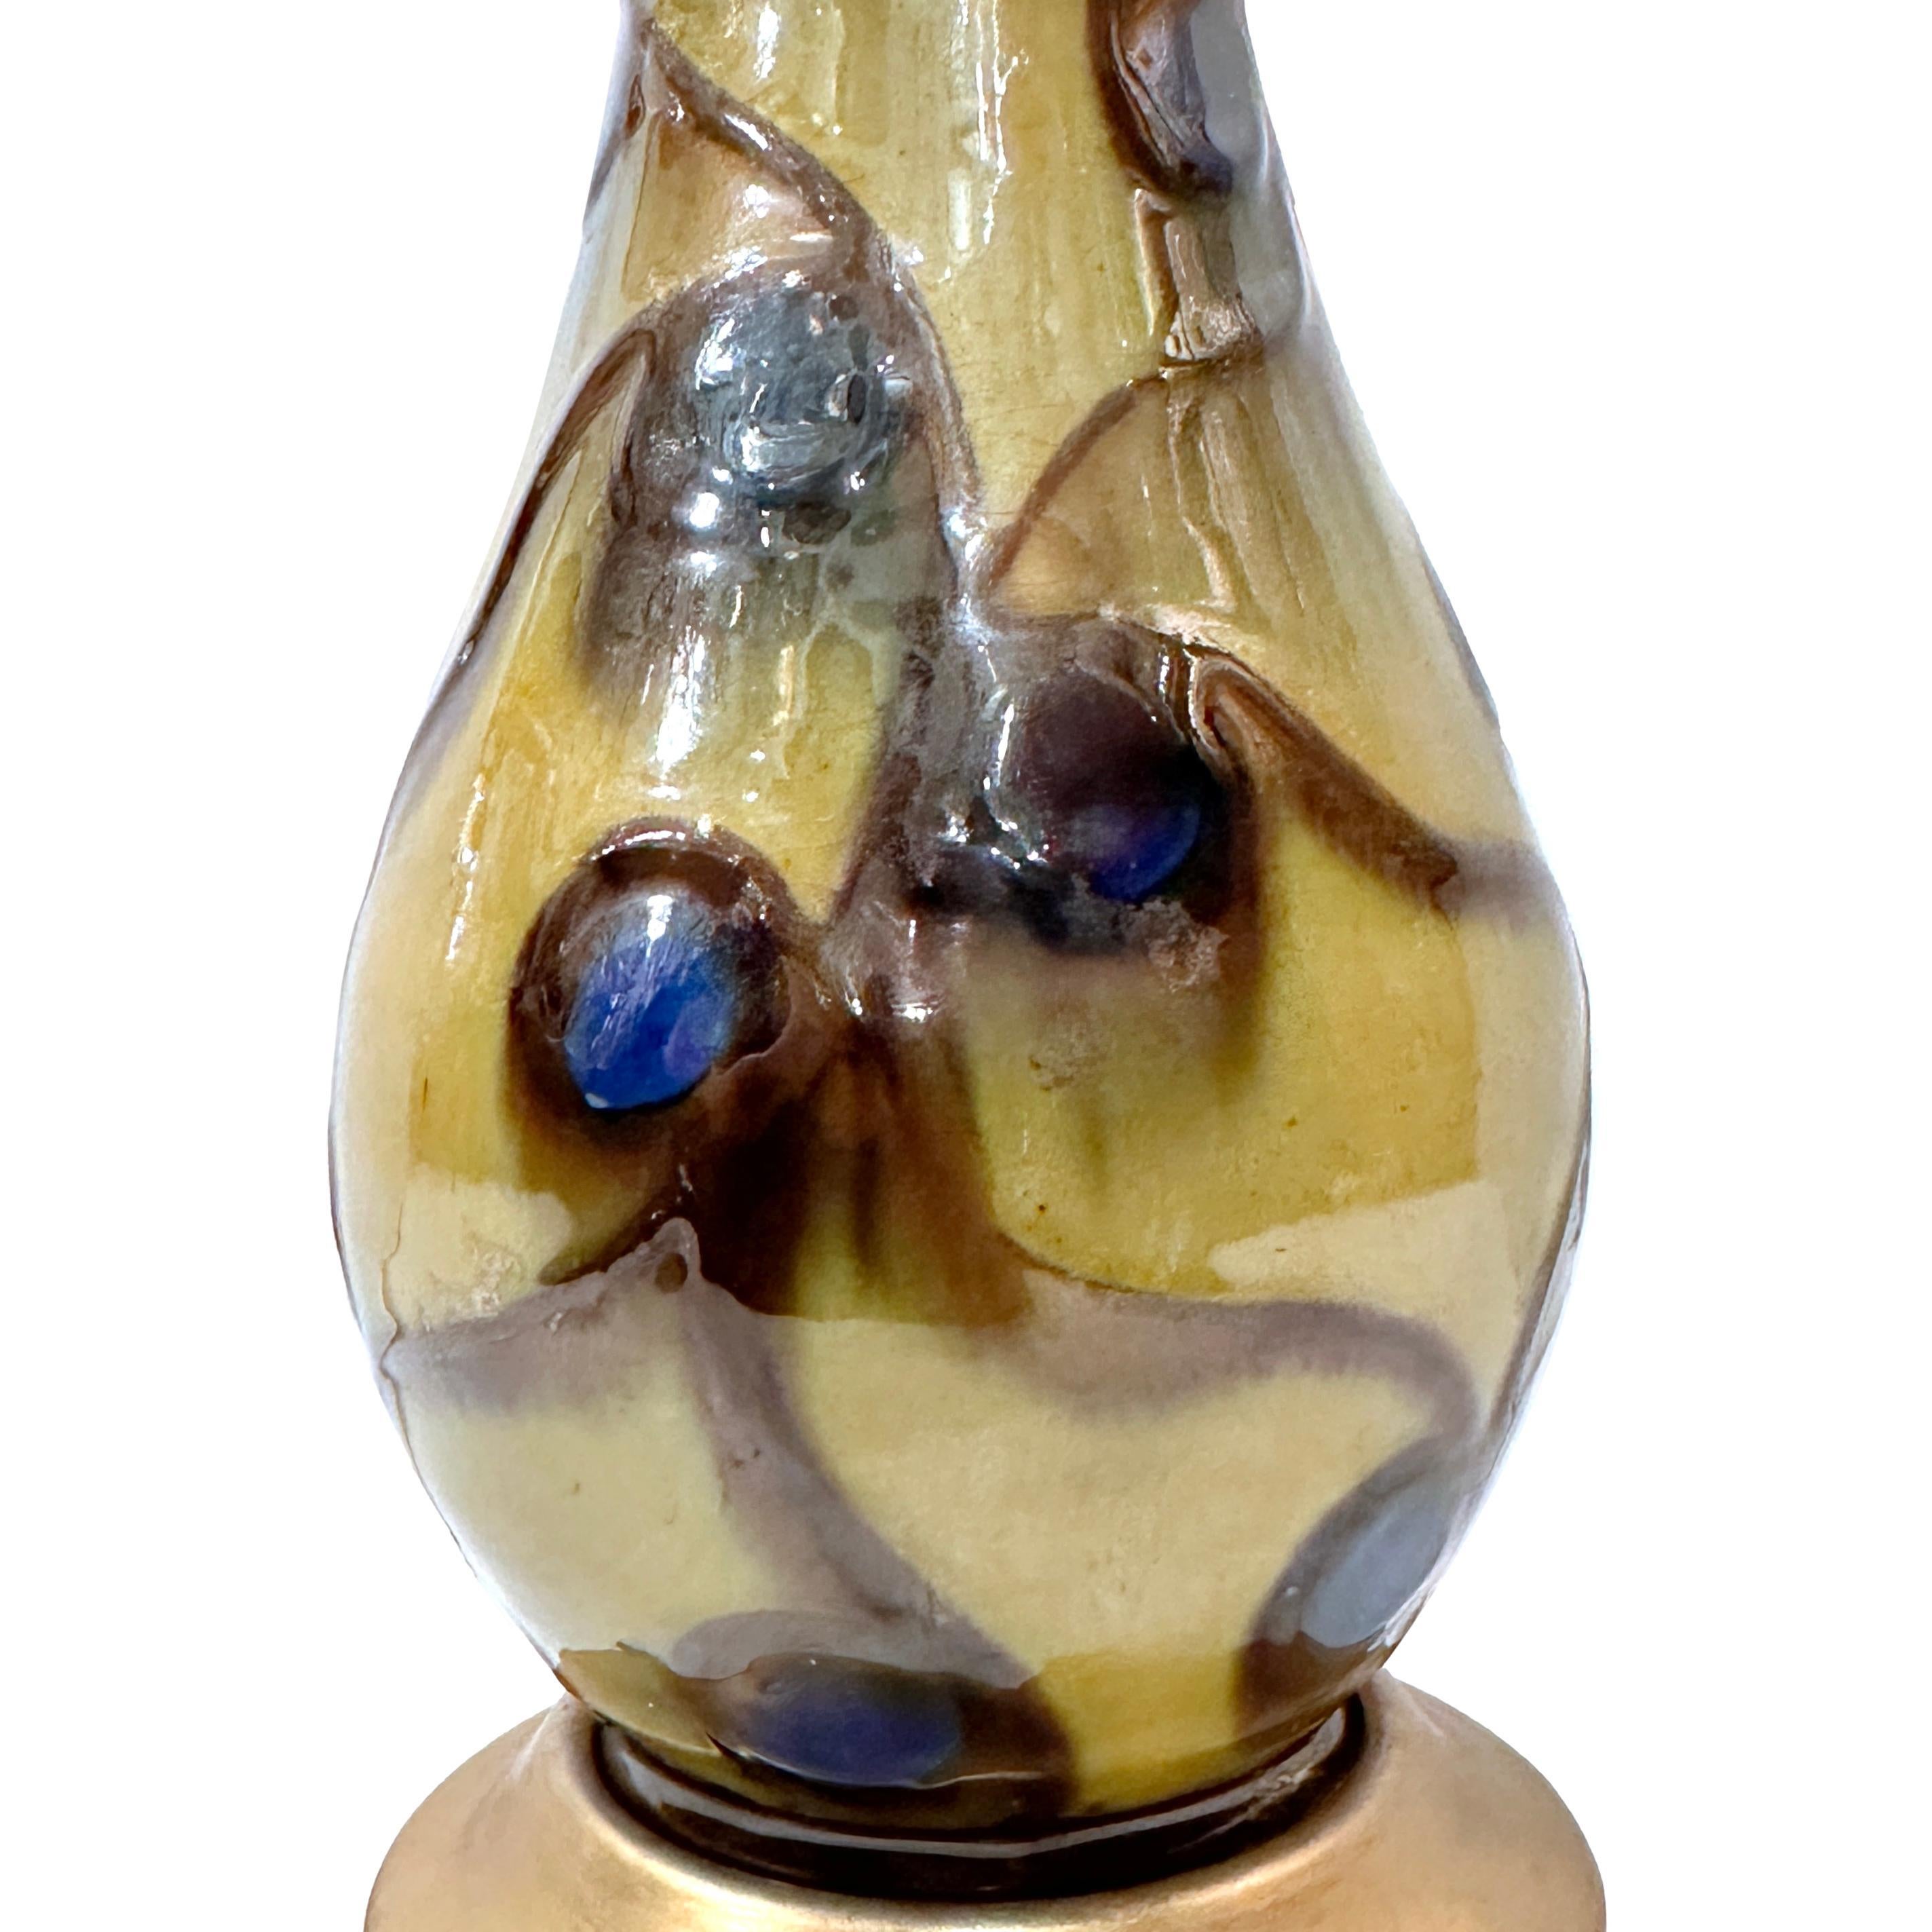 Lampe en porcelaine française unique datant des années CIRCA.

Mesures :
Hauteur du corps : 9